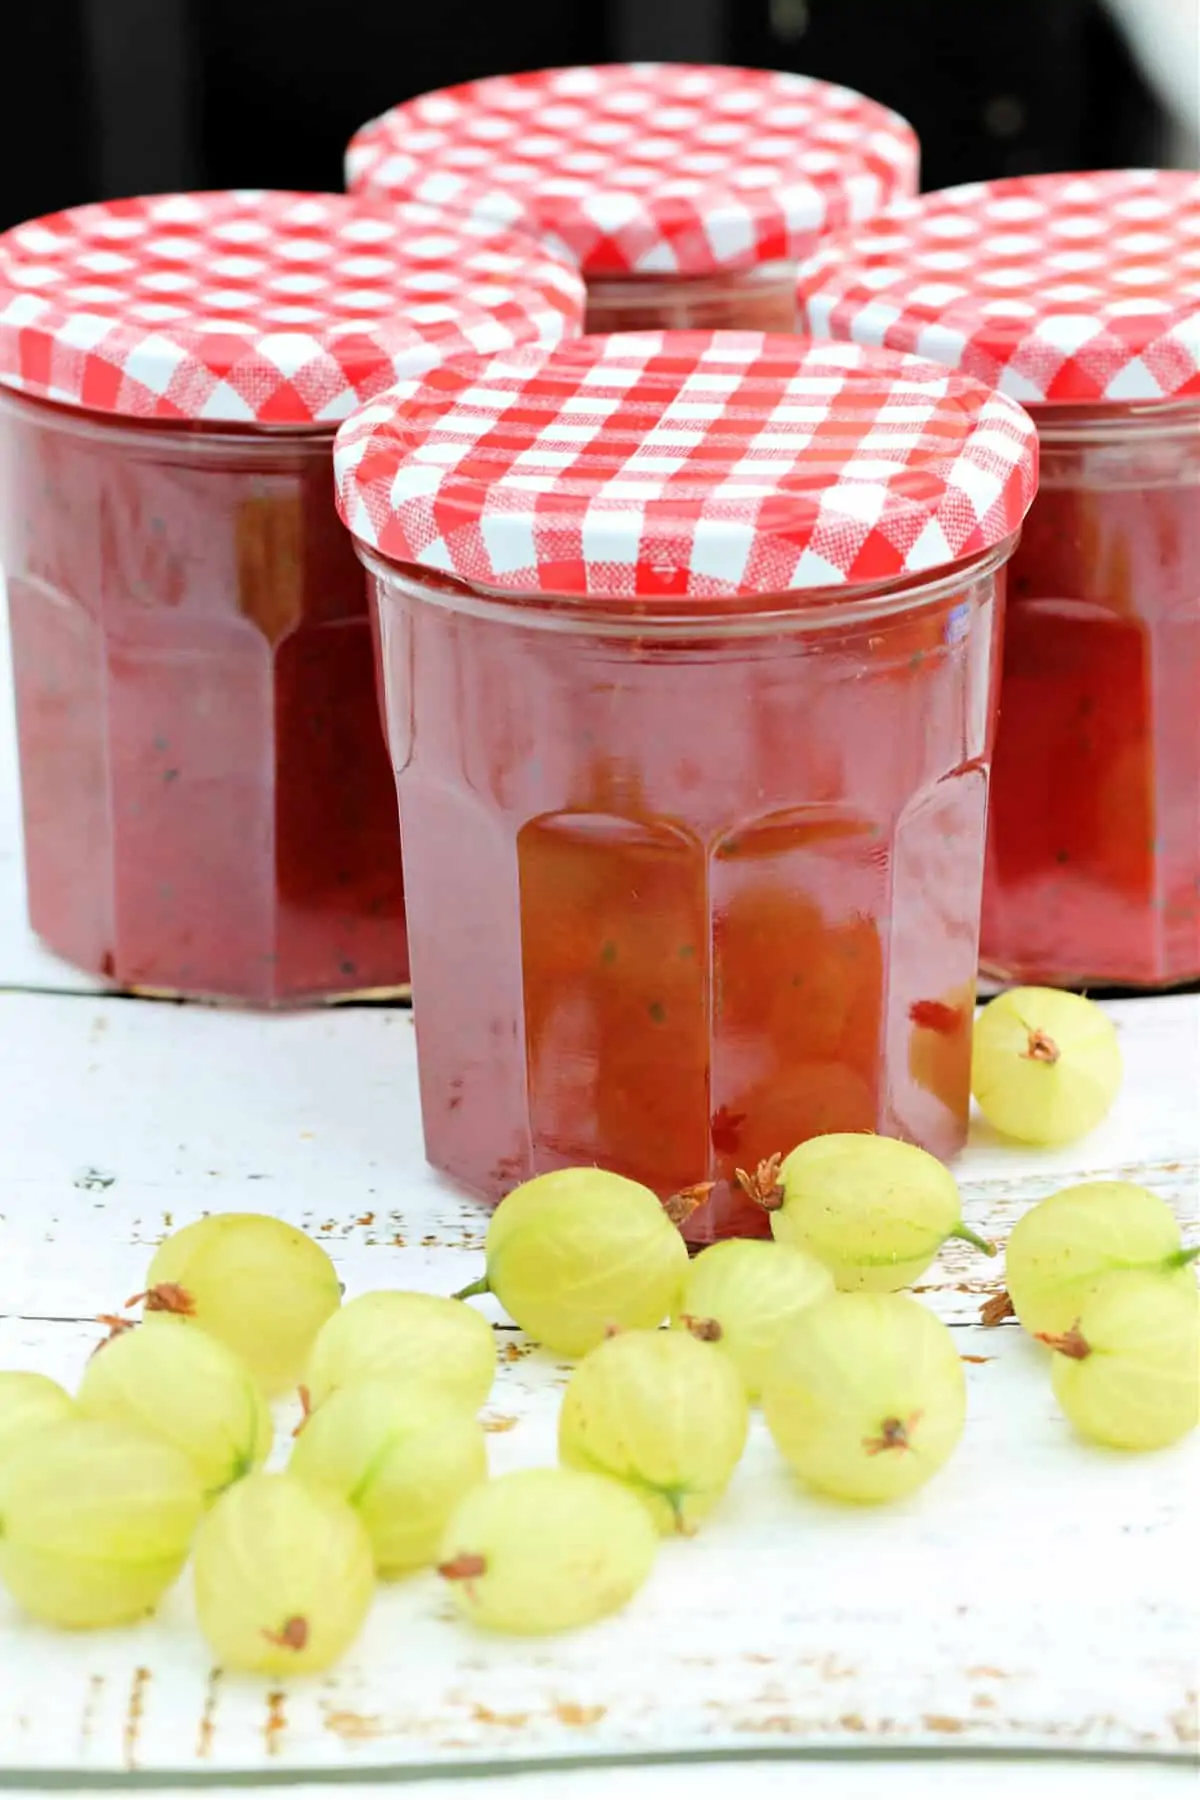 Jars of jam with gooseberries in front.